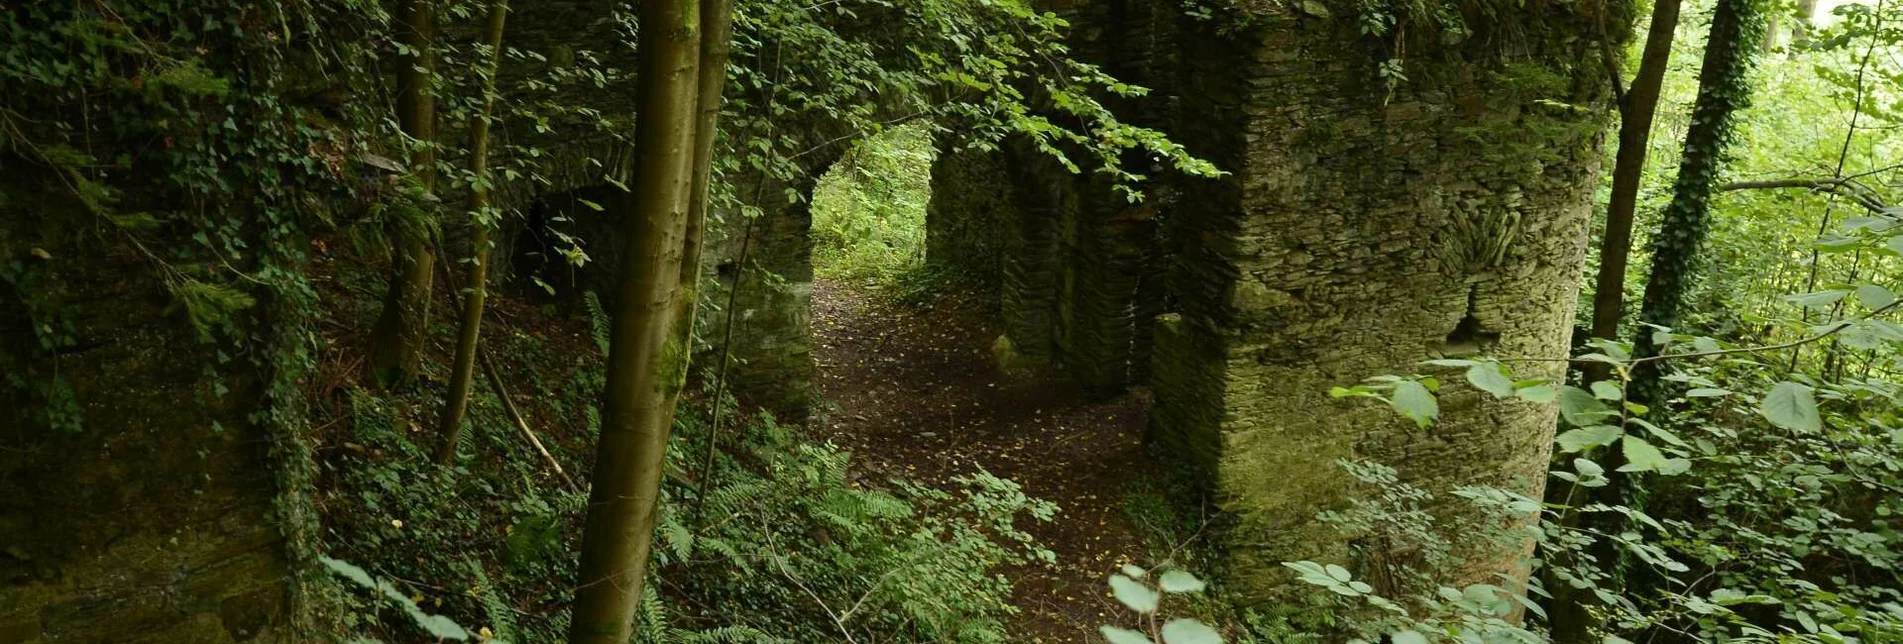 Hiking route Ruinen-Runde: Von Alt Leonroth bis Neu Leonroth - Touren-Impression #1 | © Community